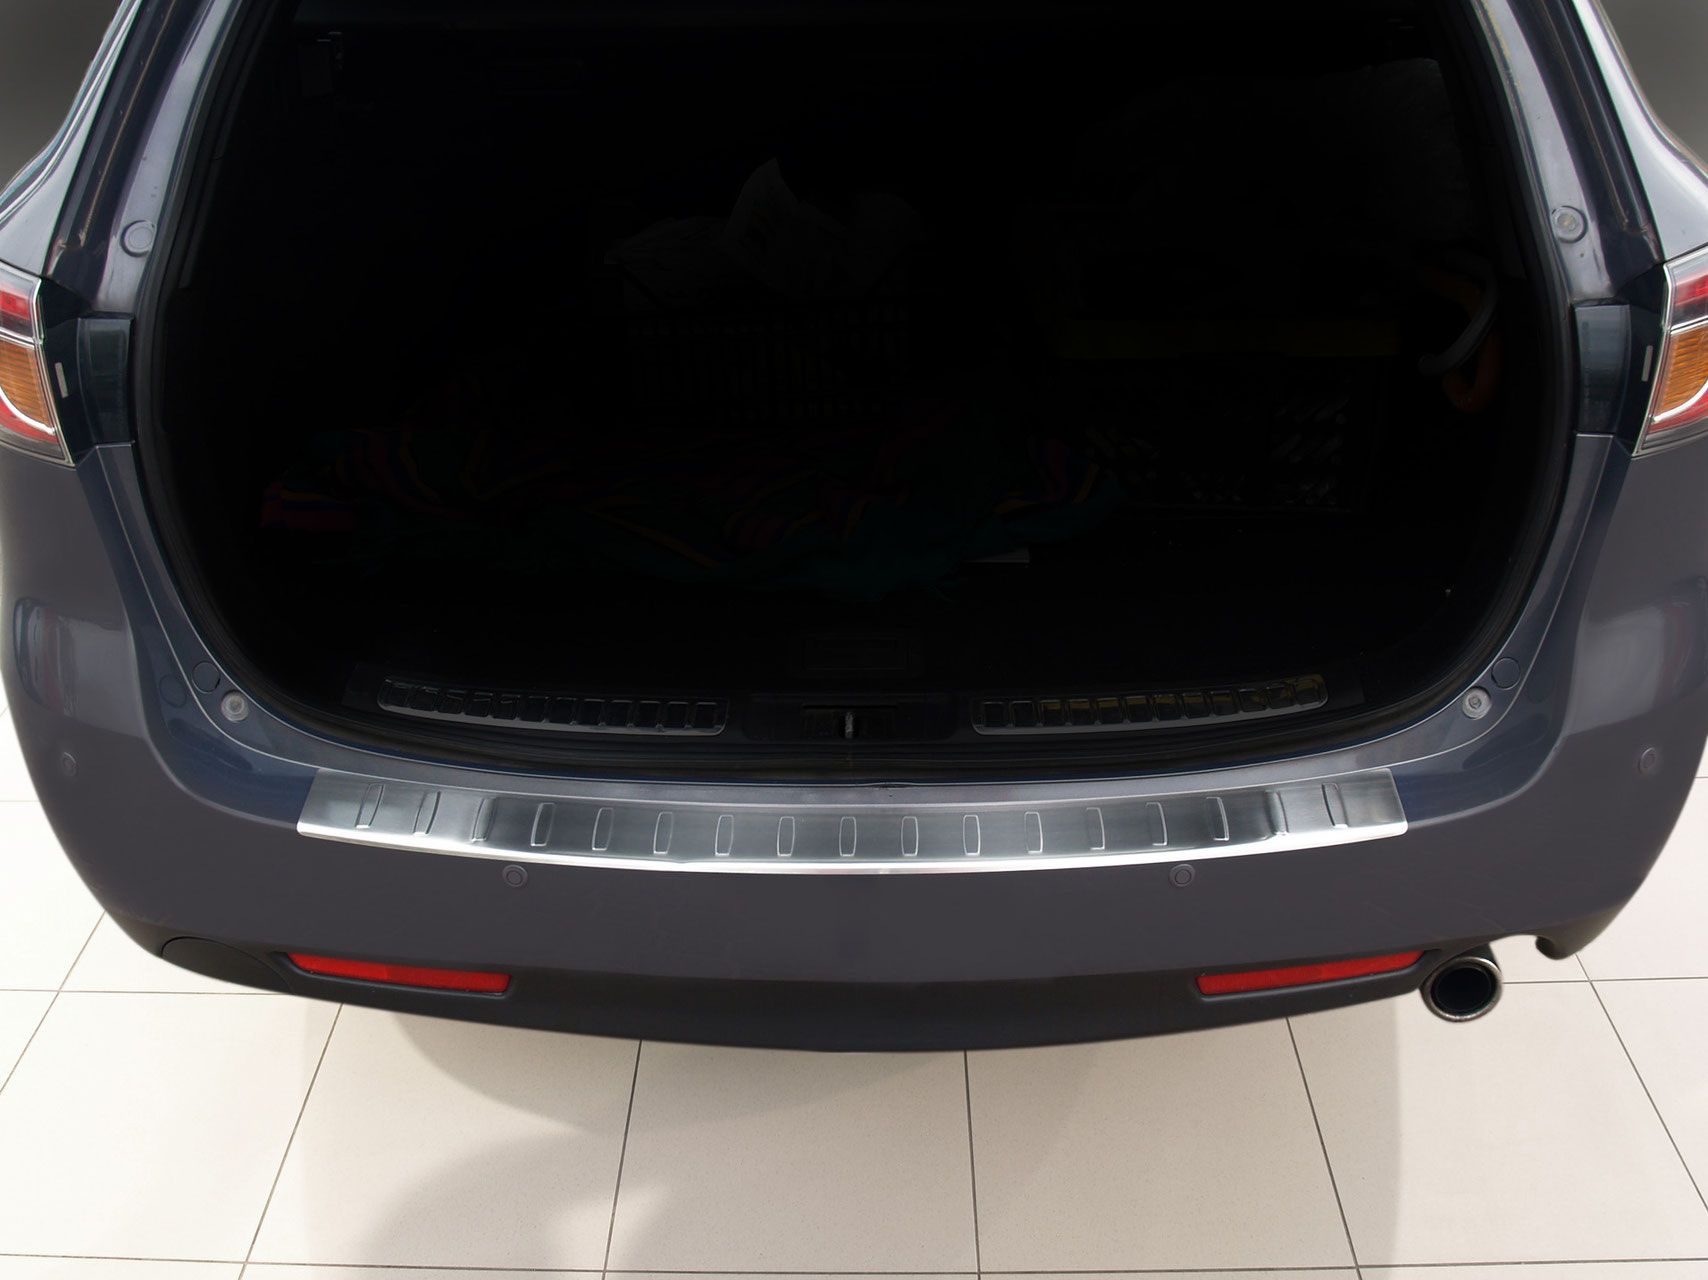 Ladekantenschutz für Mazda 6 - Schutz für die Ladekante Ihres Fahrzeuges